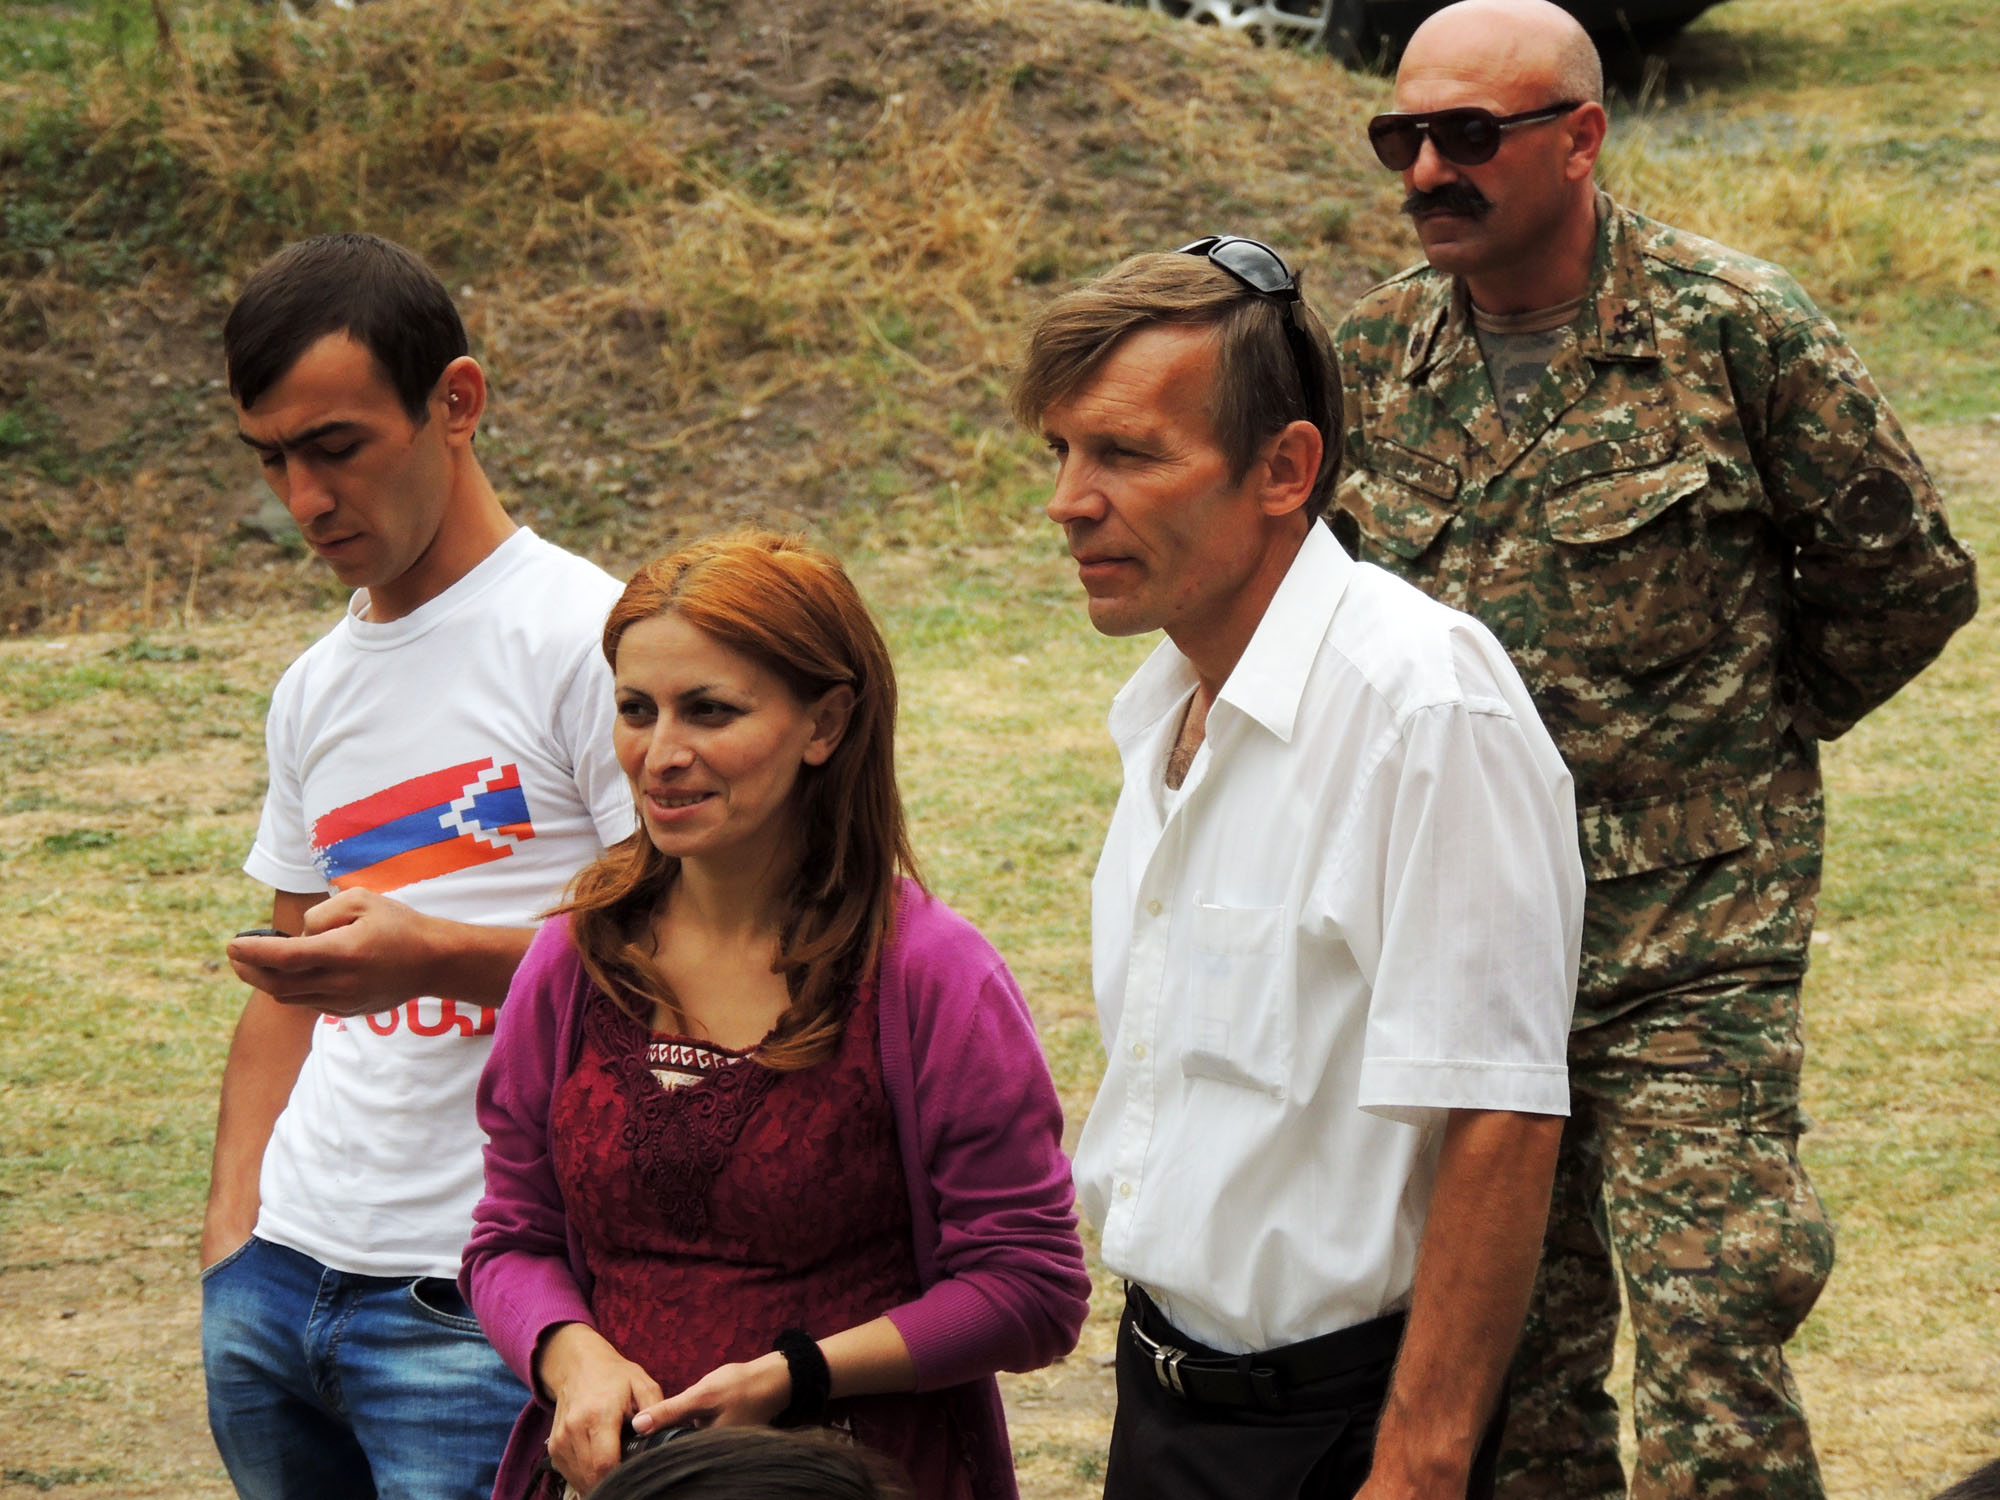 Отганизатор культурного мероприятия Мариам Пилафян с супругом Андреем (слева от неё).